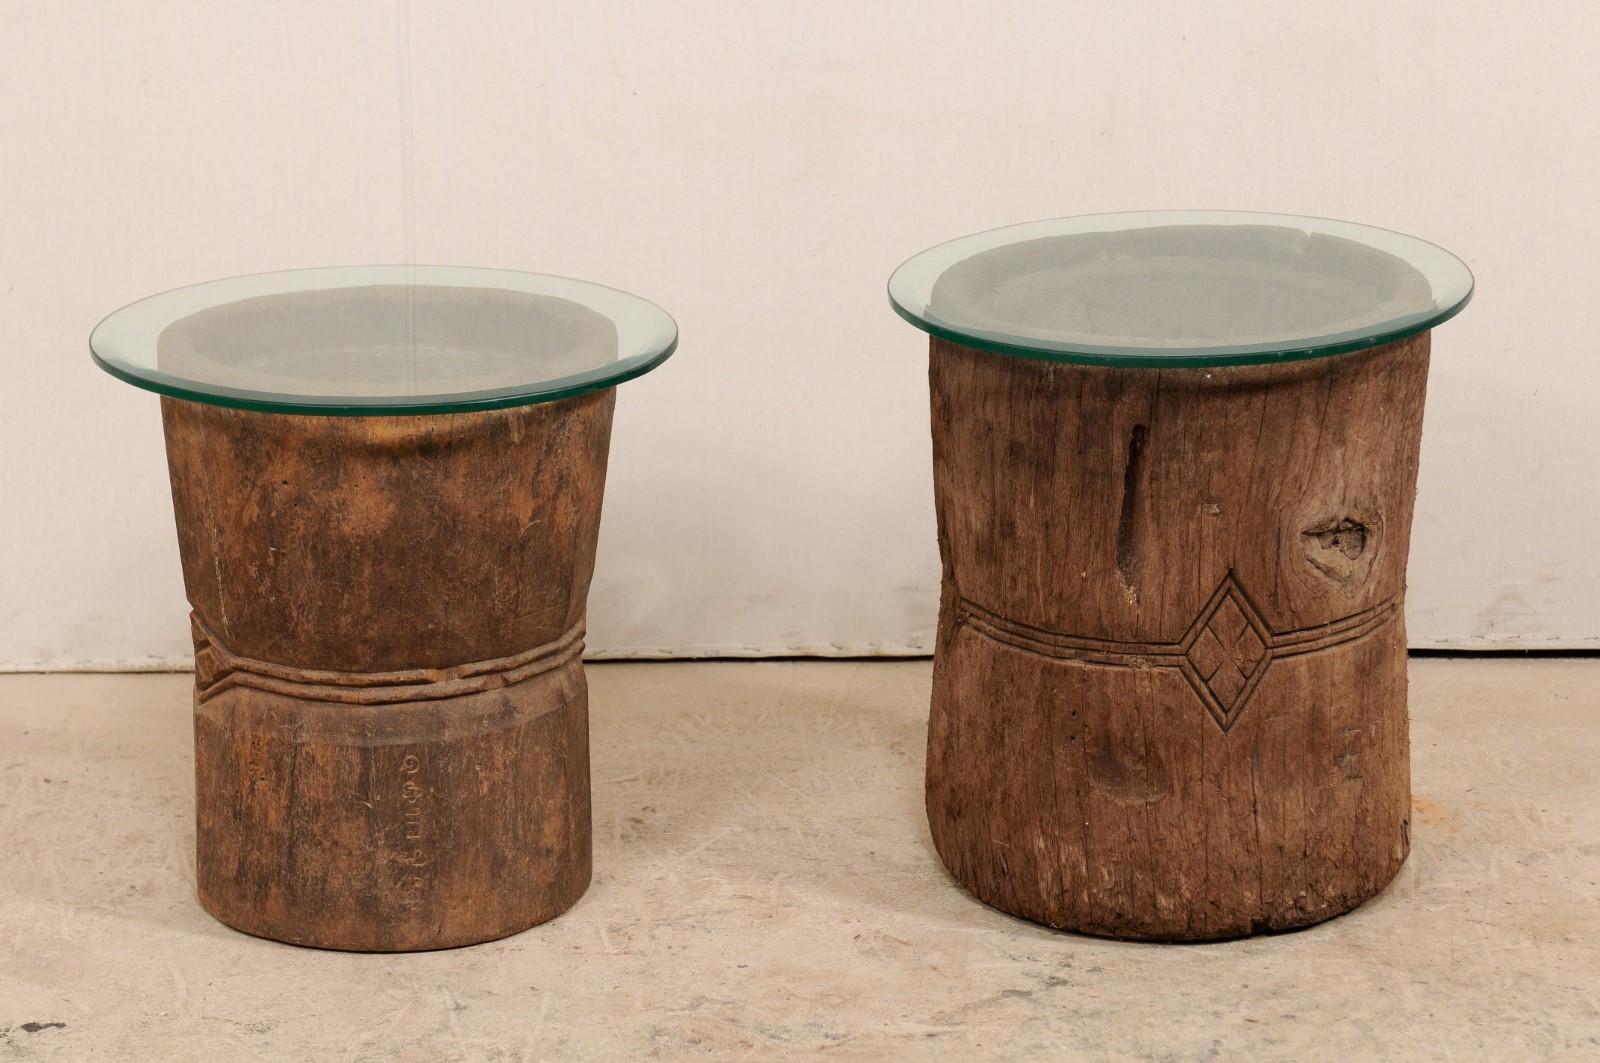 Il s'agit d'une belle paire de tables d'appoint en bois sculpté du 19ème siècle avec un plateau en verre. Ces deux tables uniques ont été fabriquées à partir de deux mortiers en bois sculptés à la main au XIXe siècle dans le sud de l'Inde (Kerala),